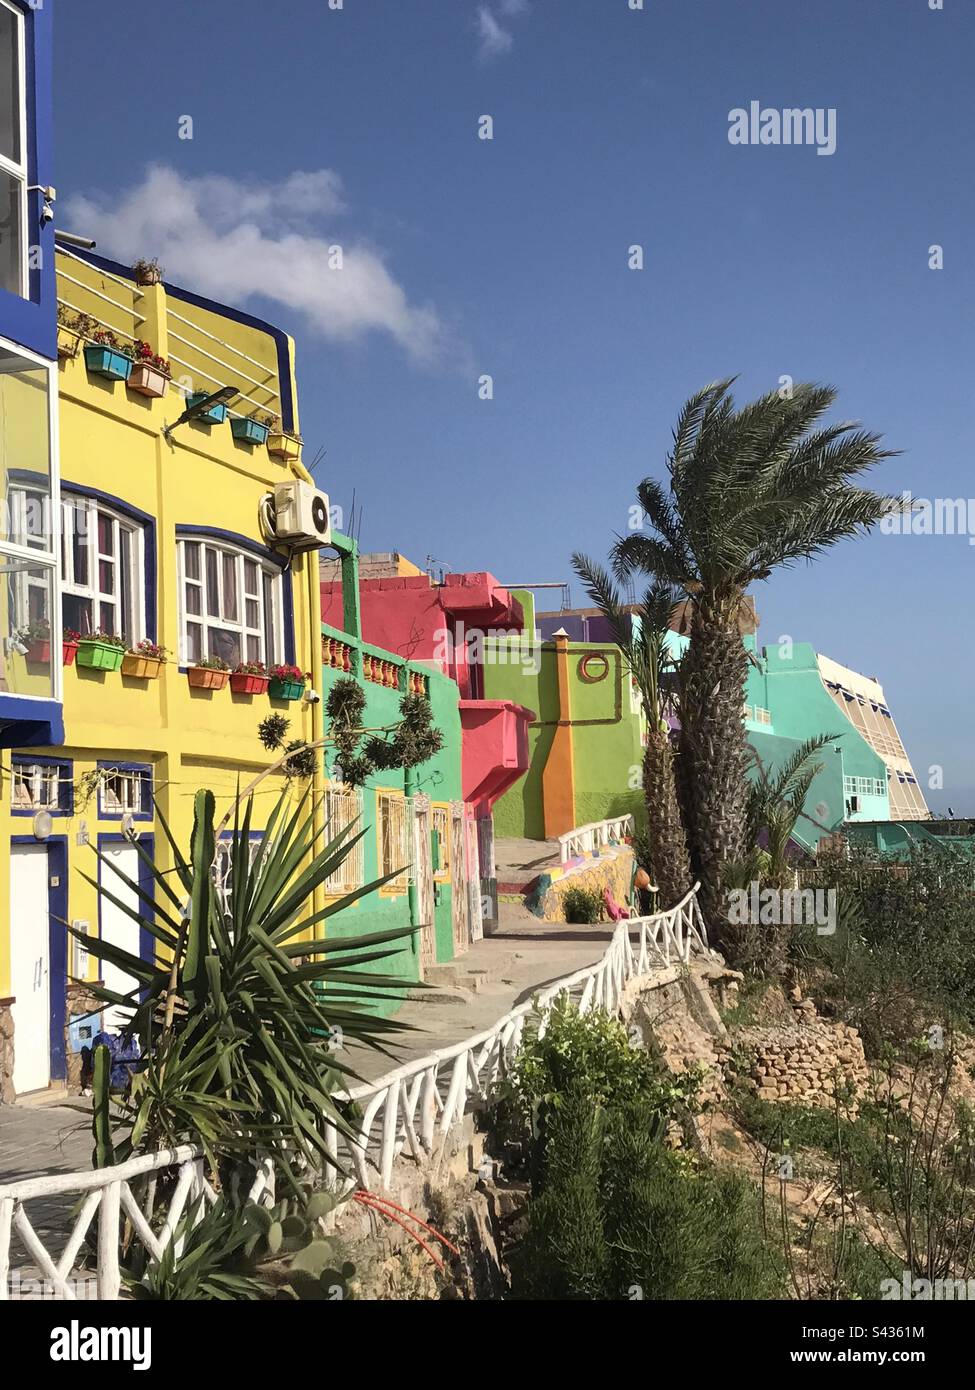 Colourful promenade in Morocco Stock Photo